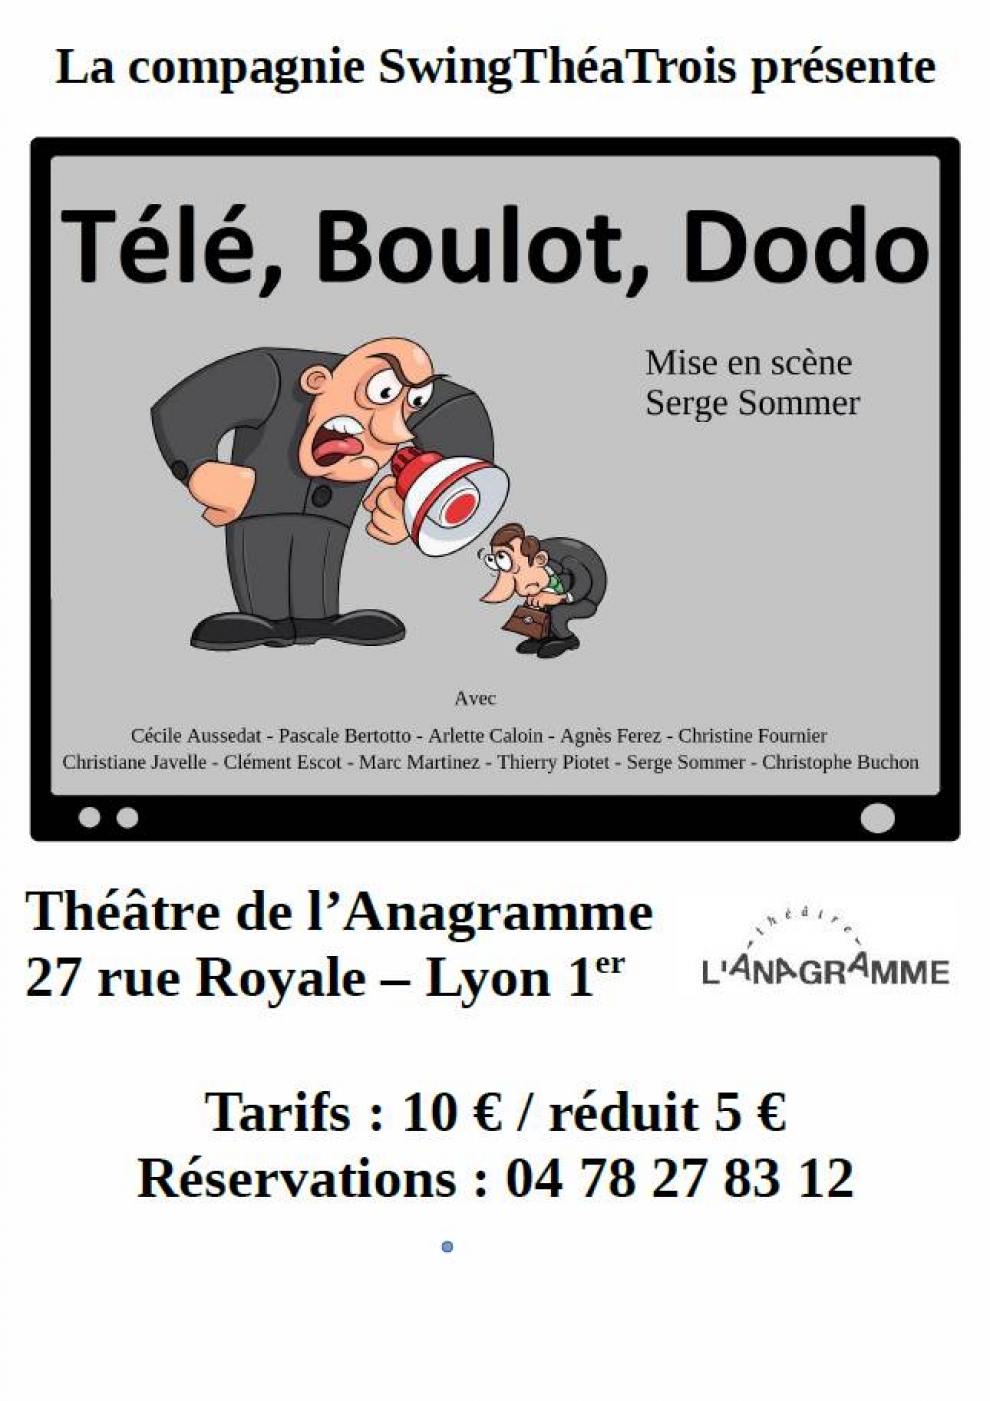 Télé Boulot Dodo - Affiche